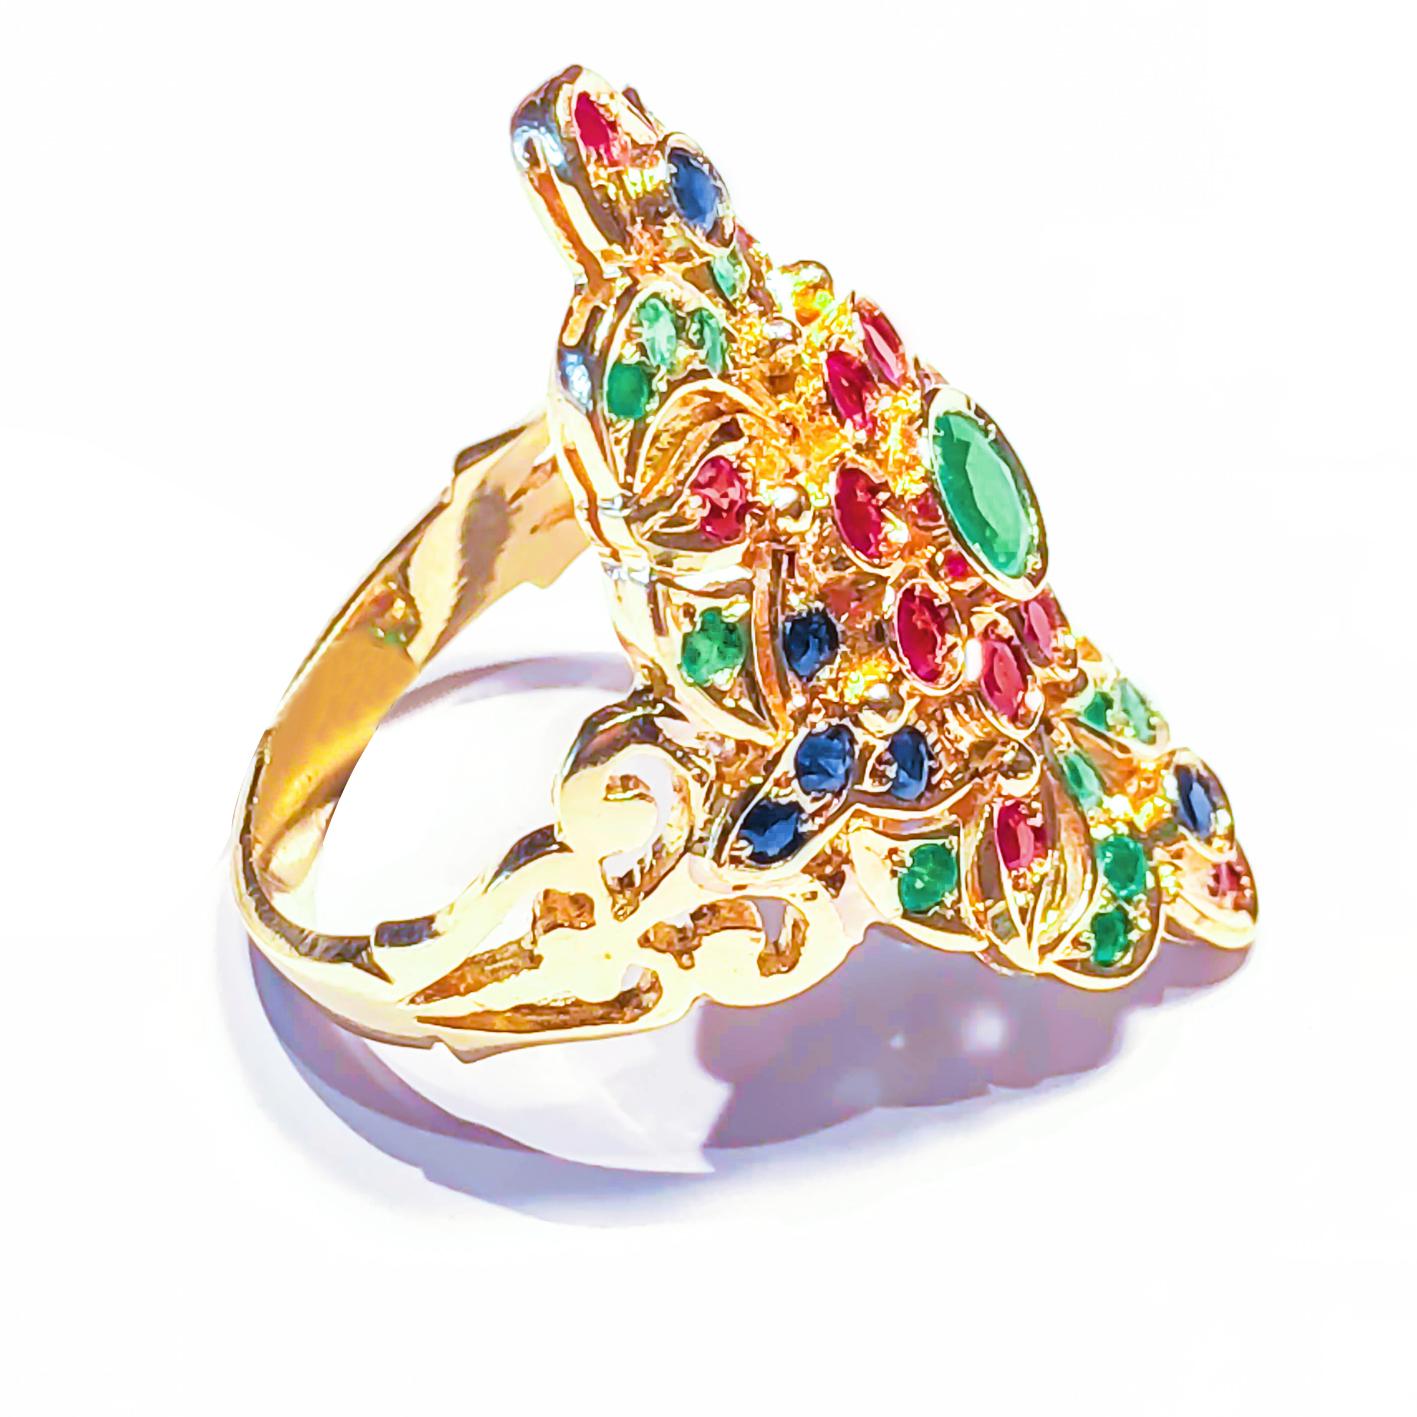 S.Georgios Handgefertigter Ring aus 18 Karat Gelbgold, verziert mit byzantinischer Granulation und einer Kombination aus Rubinen, Smaragden und Saphiren.
Es verfügt über Rubine, Saphire, und ein Smaragd Zentrum alle ein Gesamtgewicht von 1,40